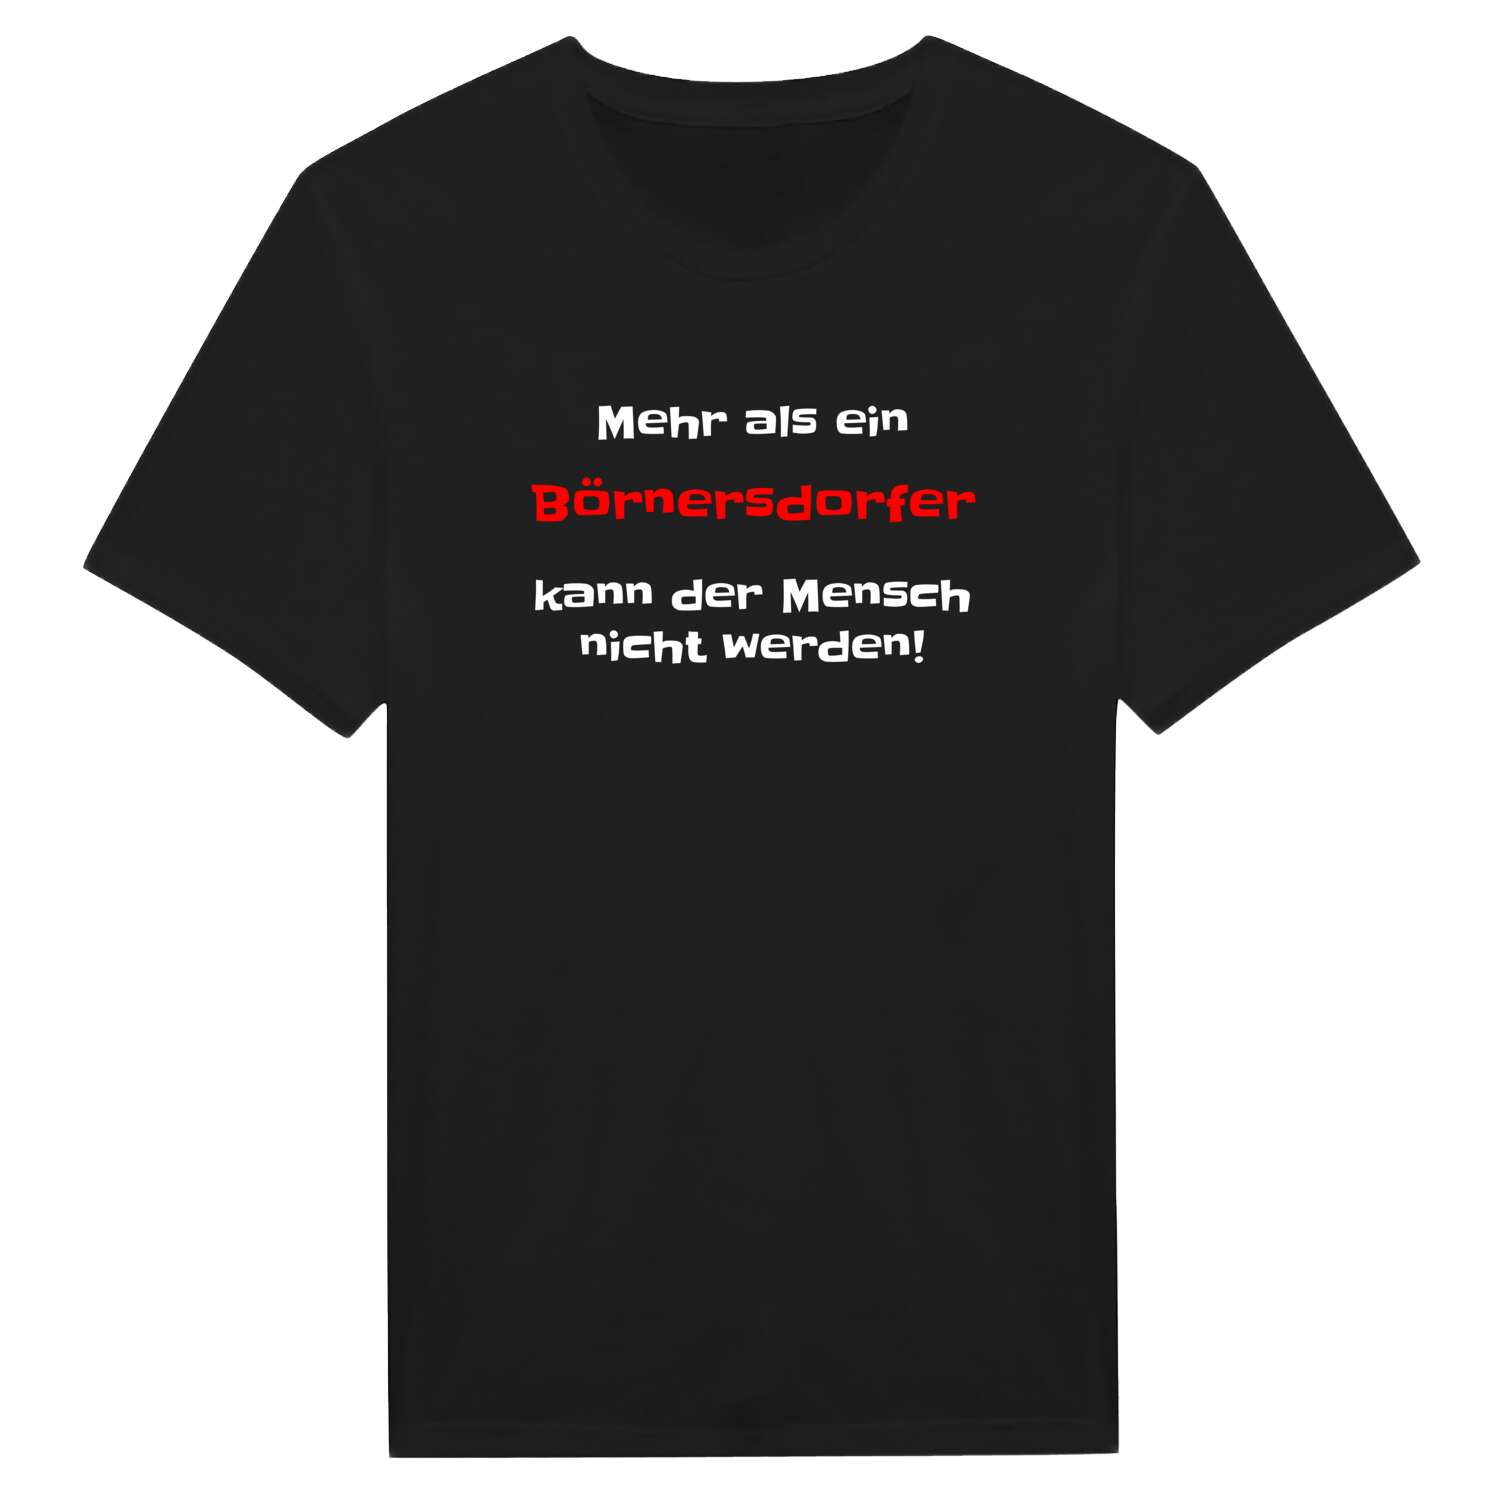 Börnersdorf T-Shirt »Mehr als ein«